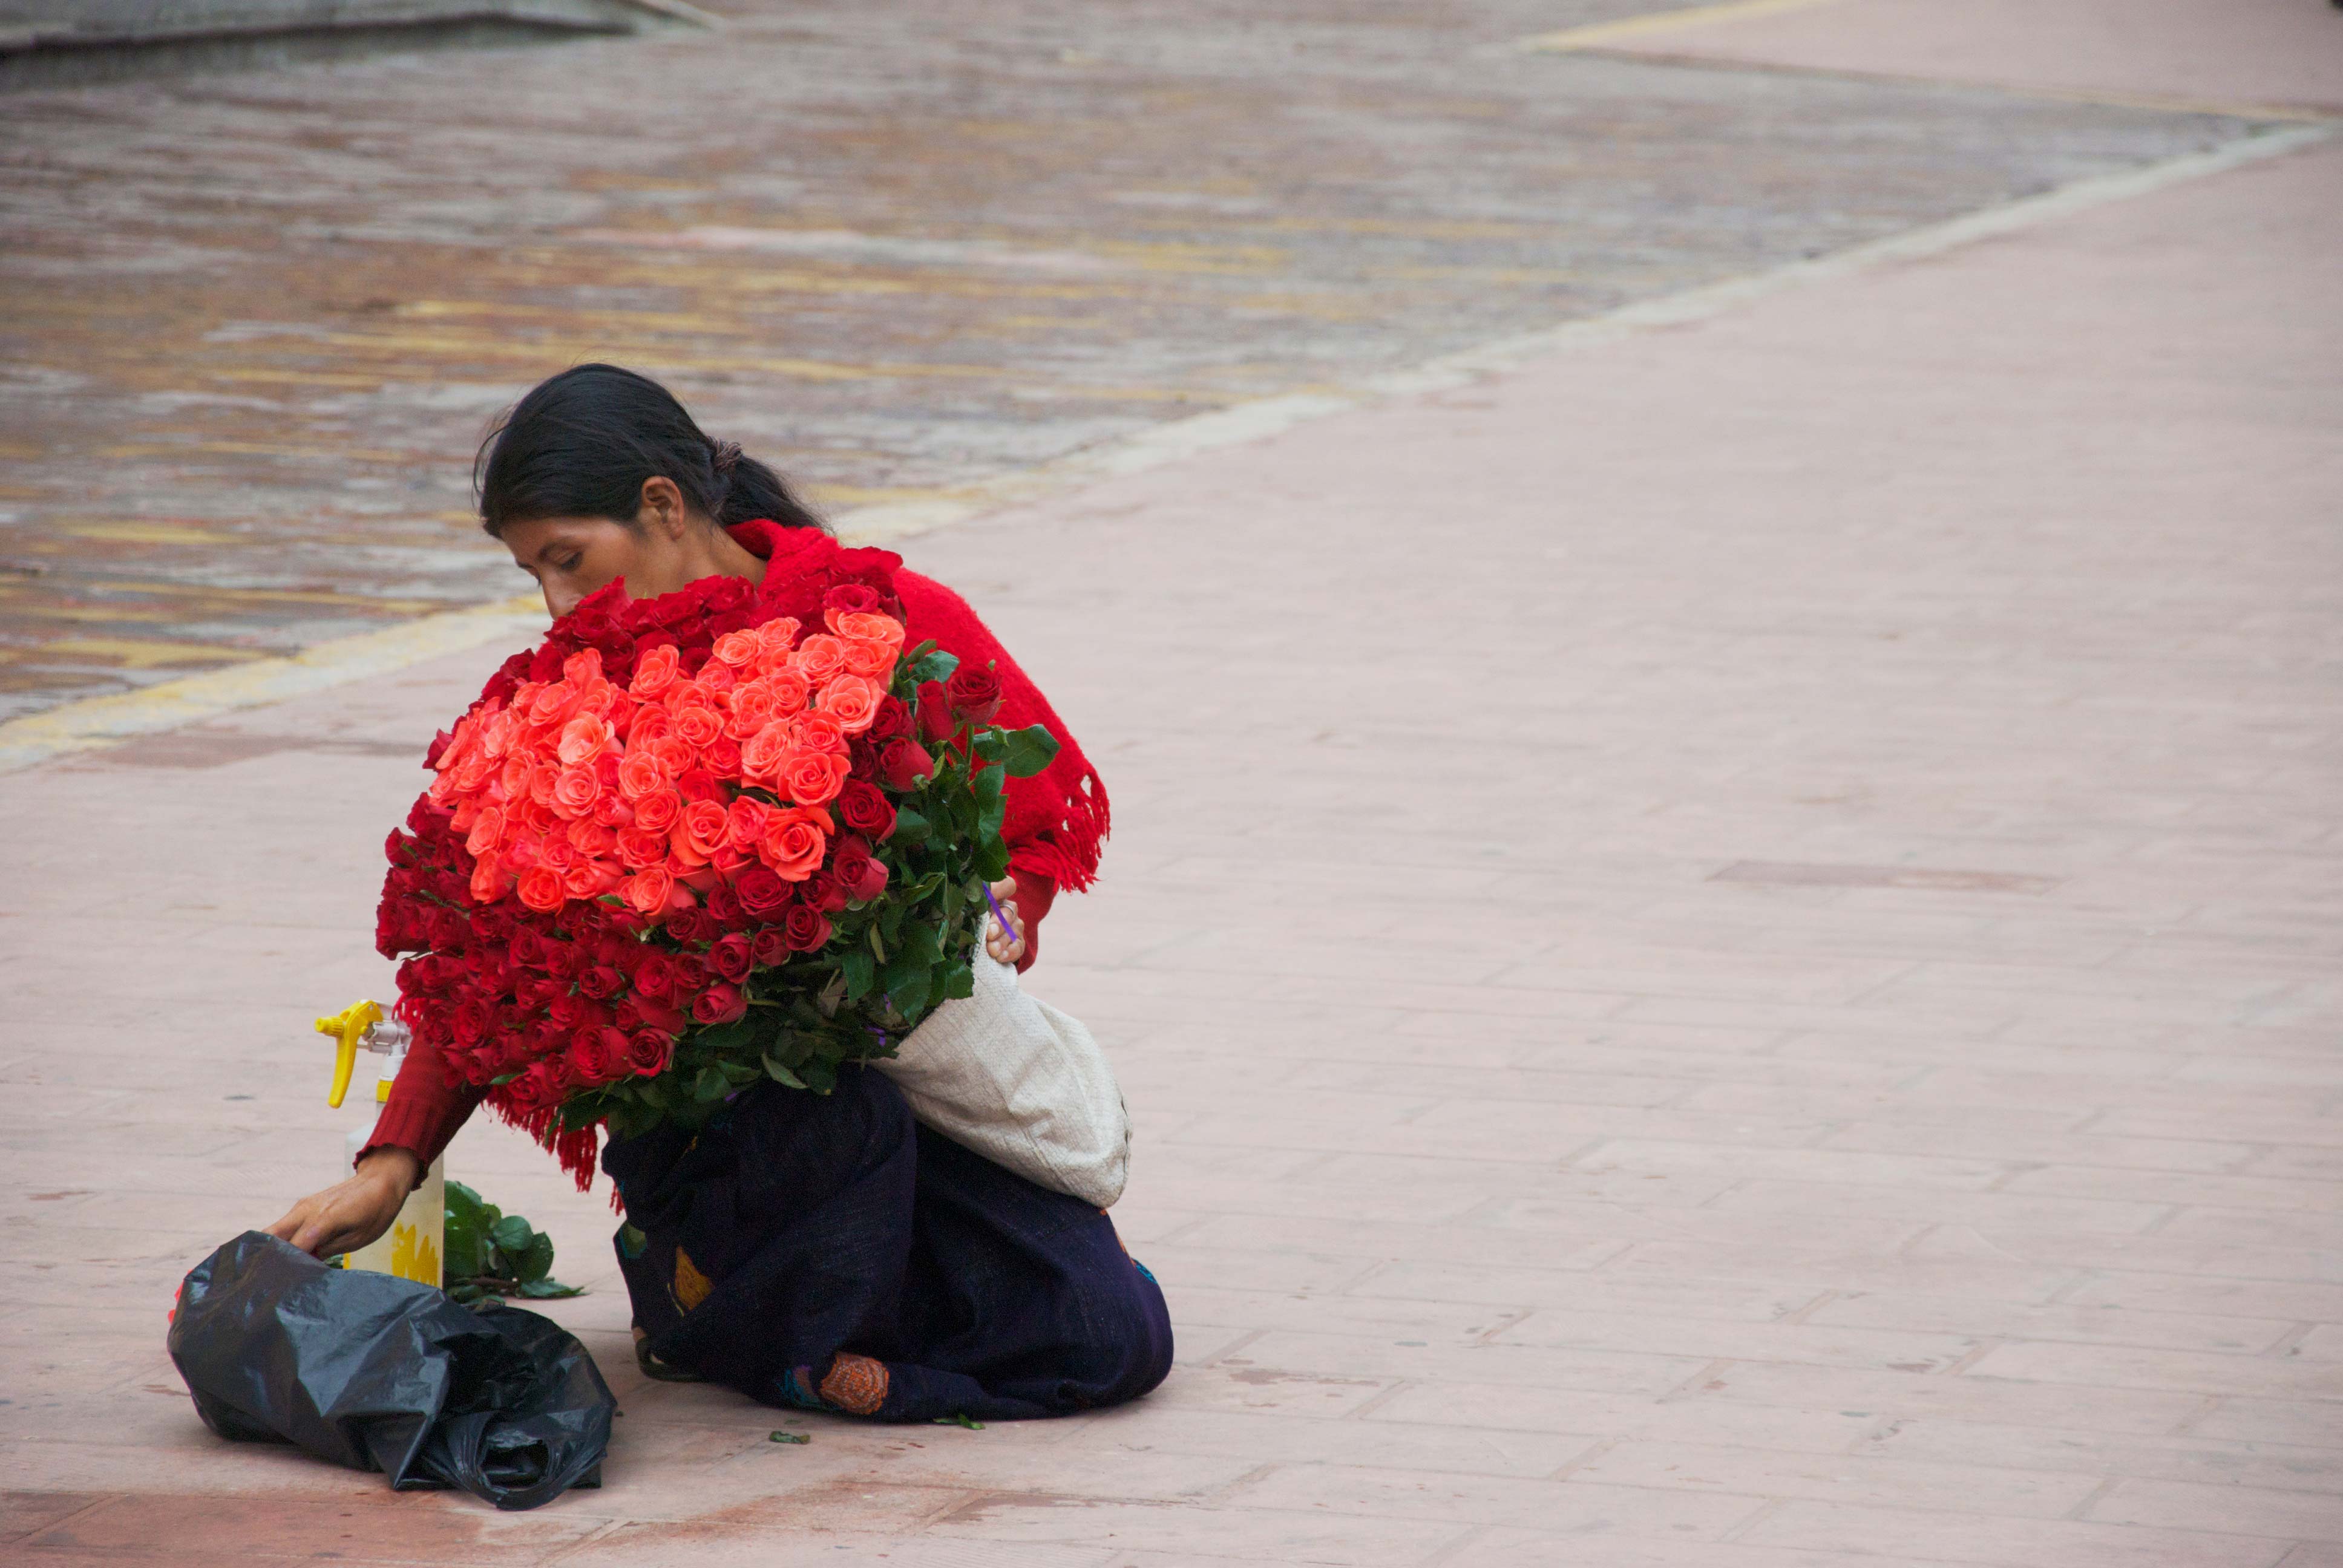 Flower Vendors Guatemala: Las Flores de Guatemala